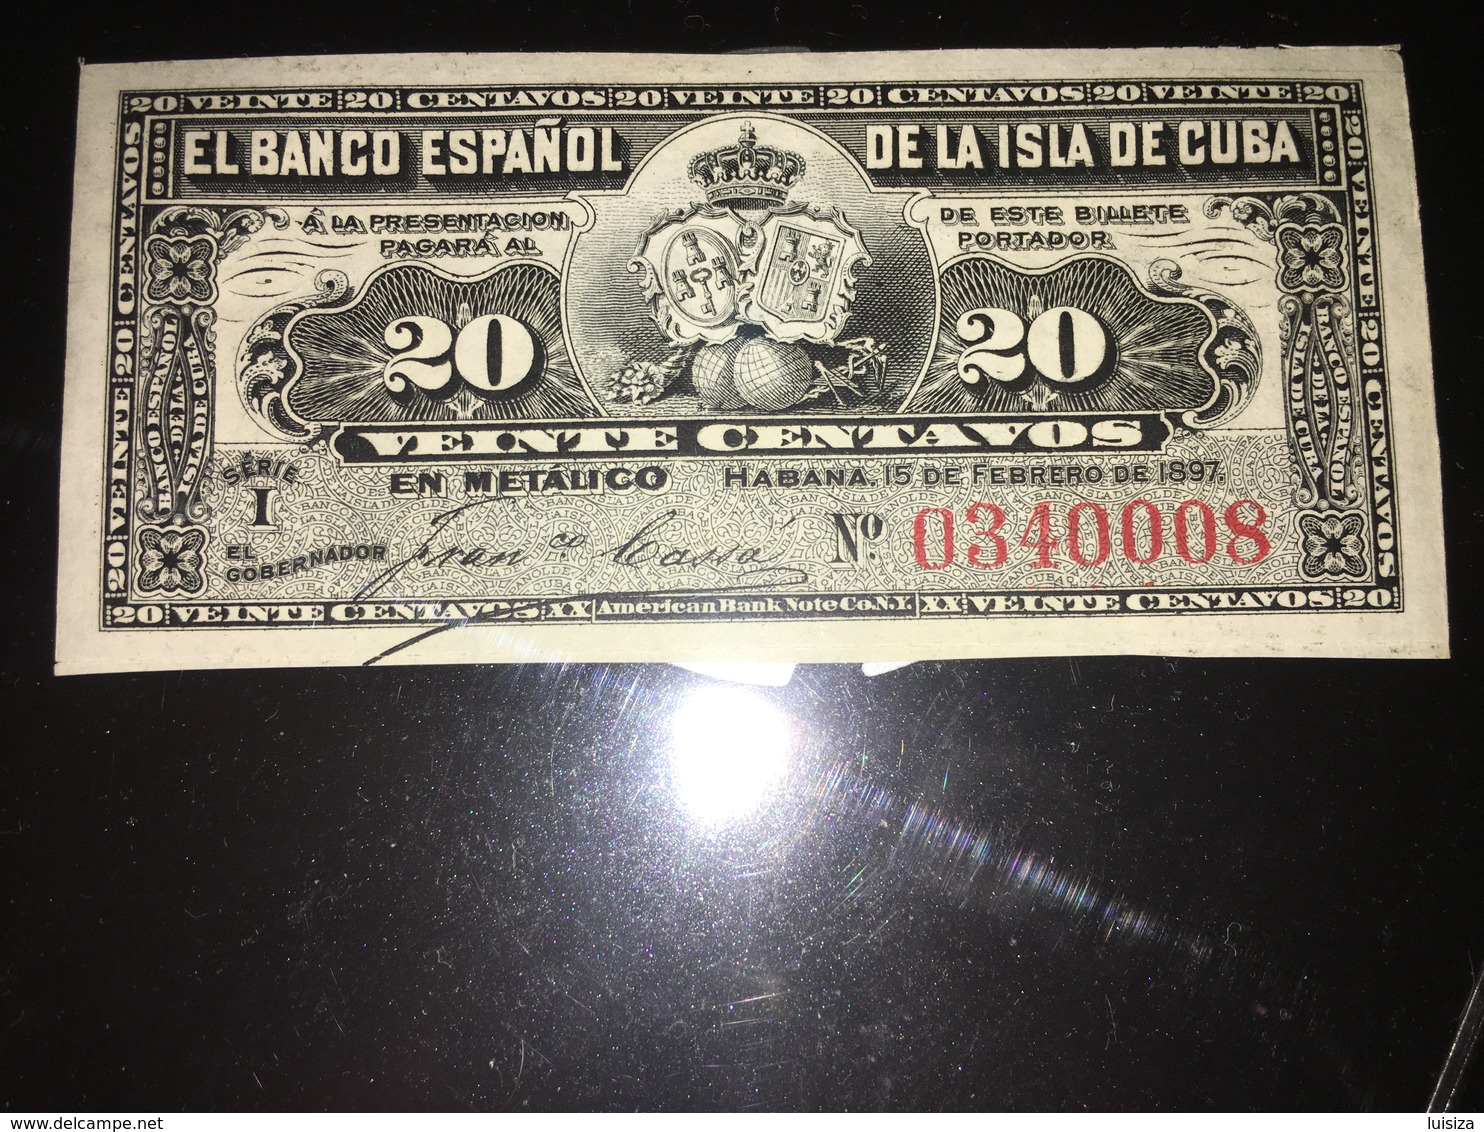 See Photographs. 1897 Cuba 20 Centavos Banknote. EL BANCO ESPANOL - Cuba